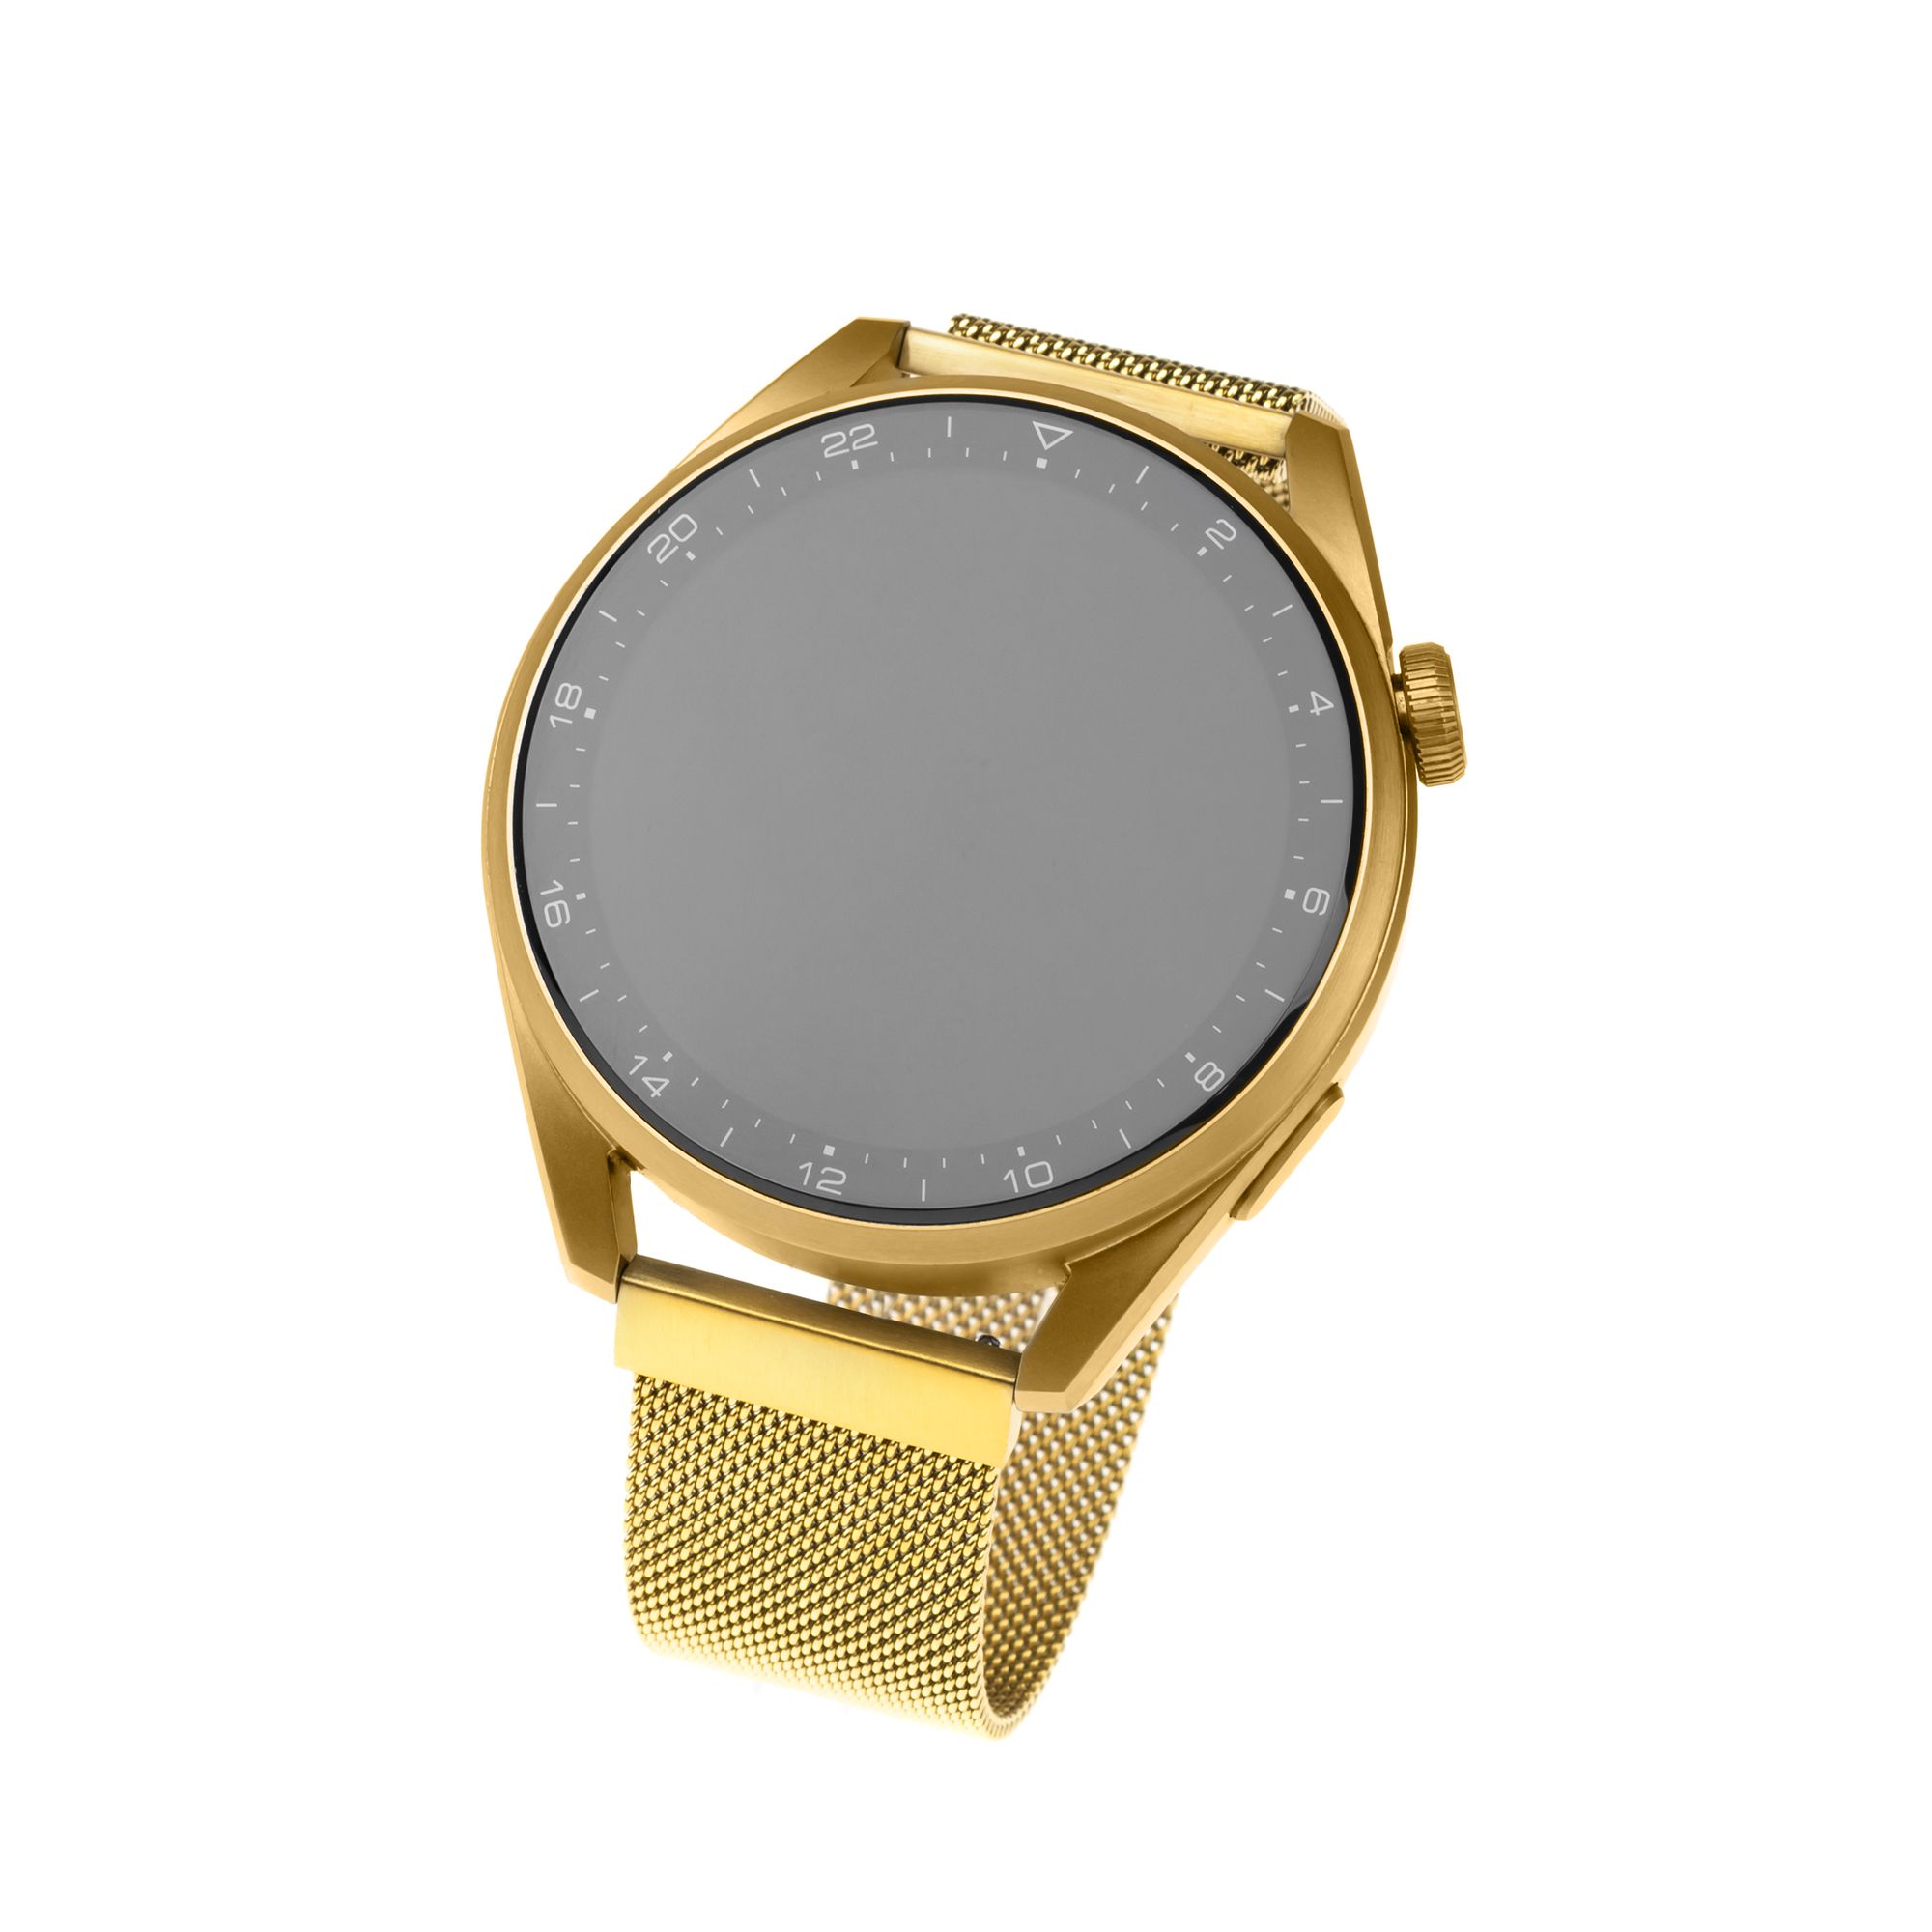 Síťovaný nerezový řemínek Mesh Strap s Quick Release 20mm pro smartwatch, zlatý